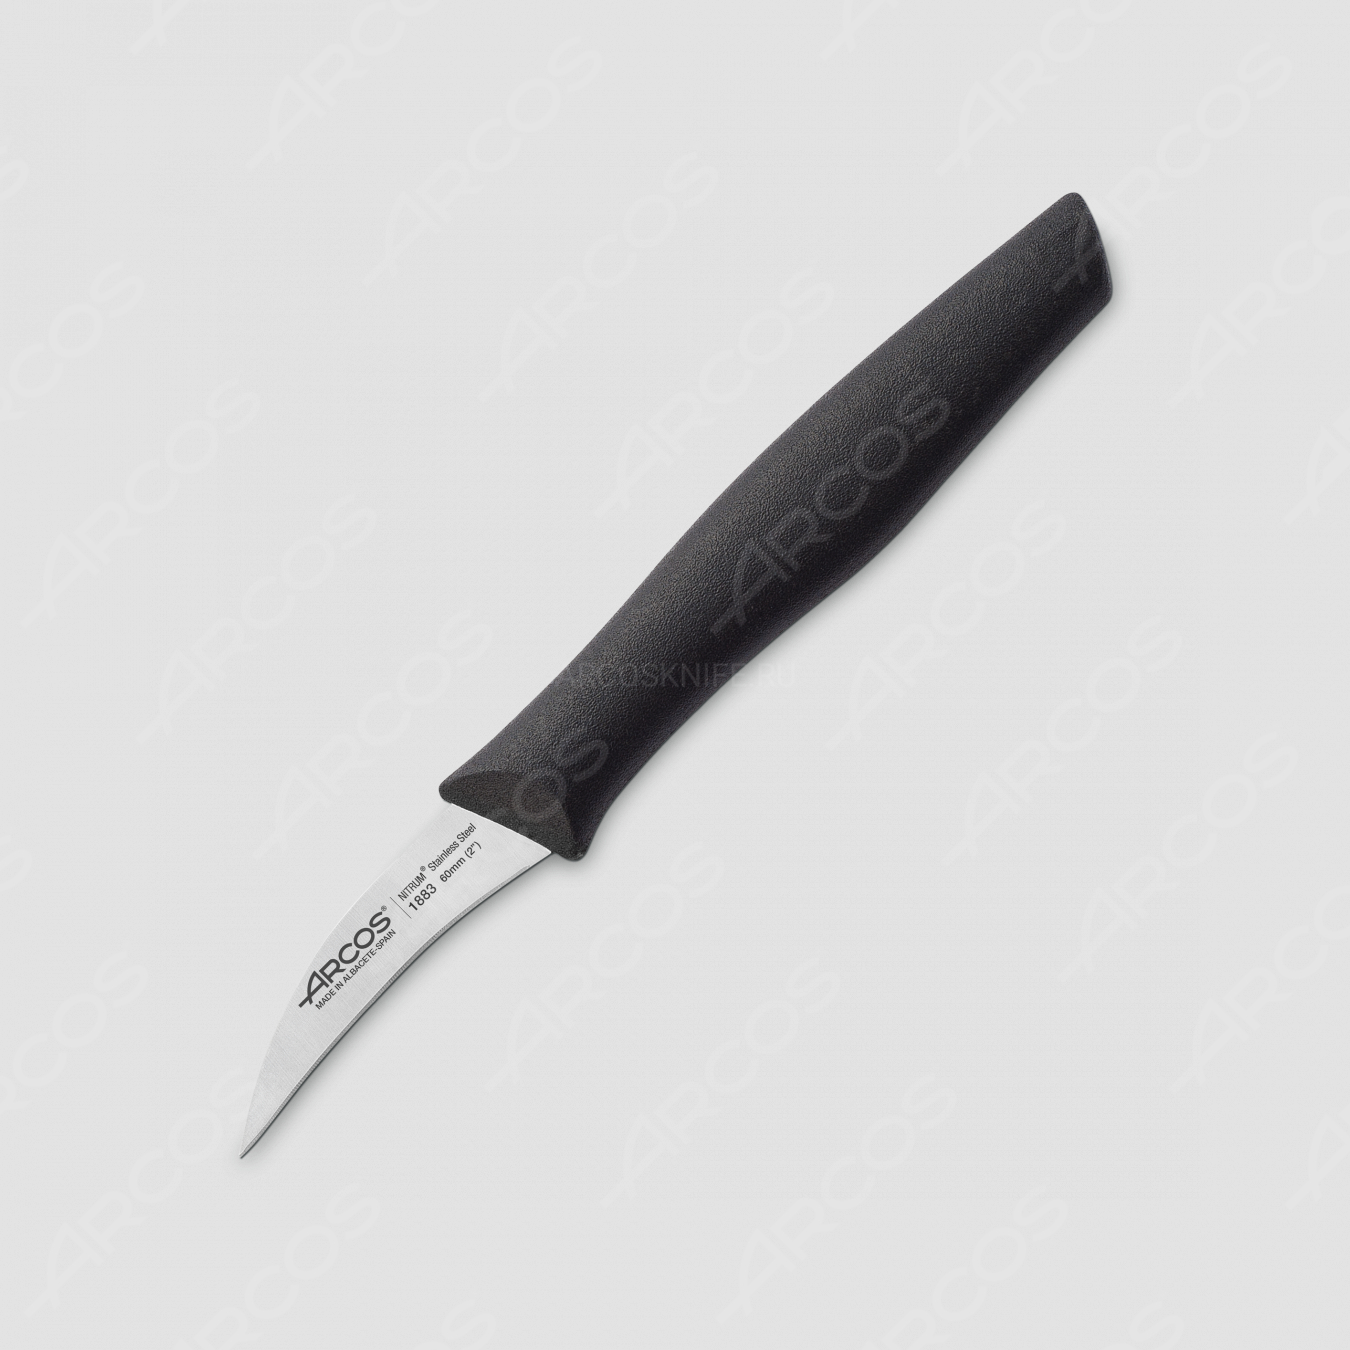 Нож кухонный для чистки 6 см, рукоять черная, серия Nova, ARCOS, Испания